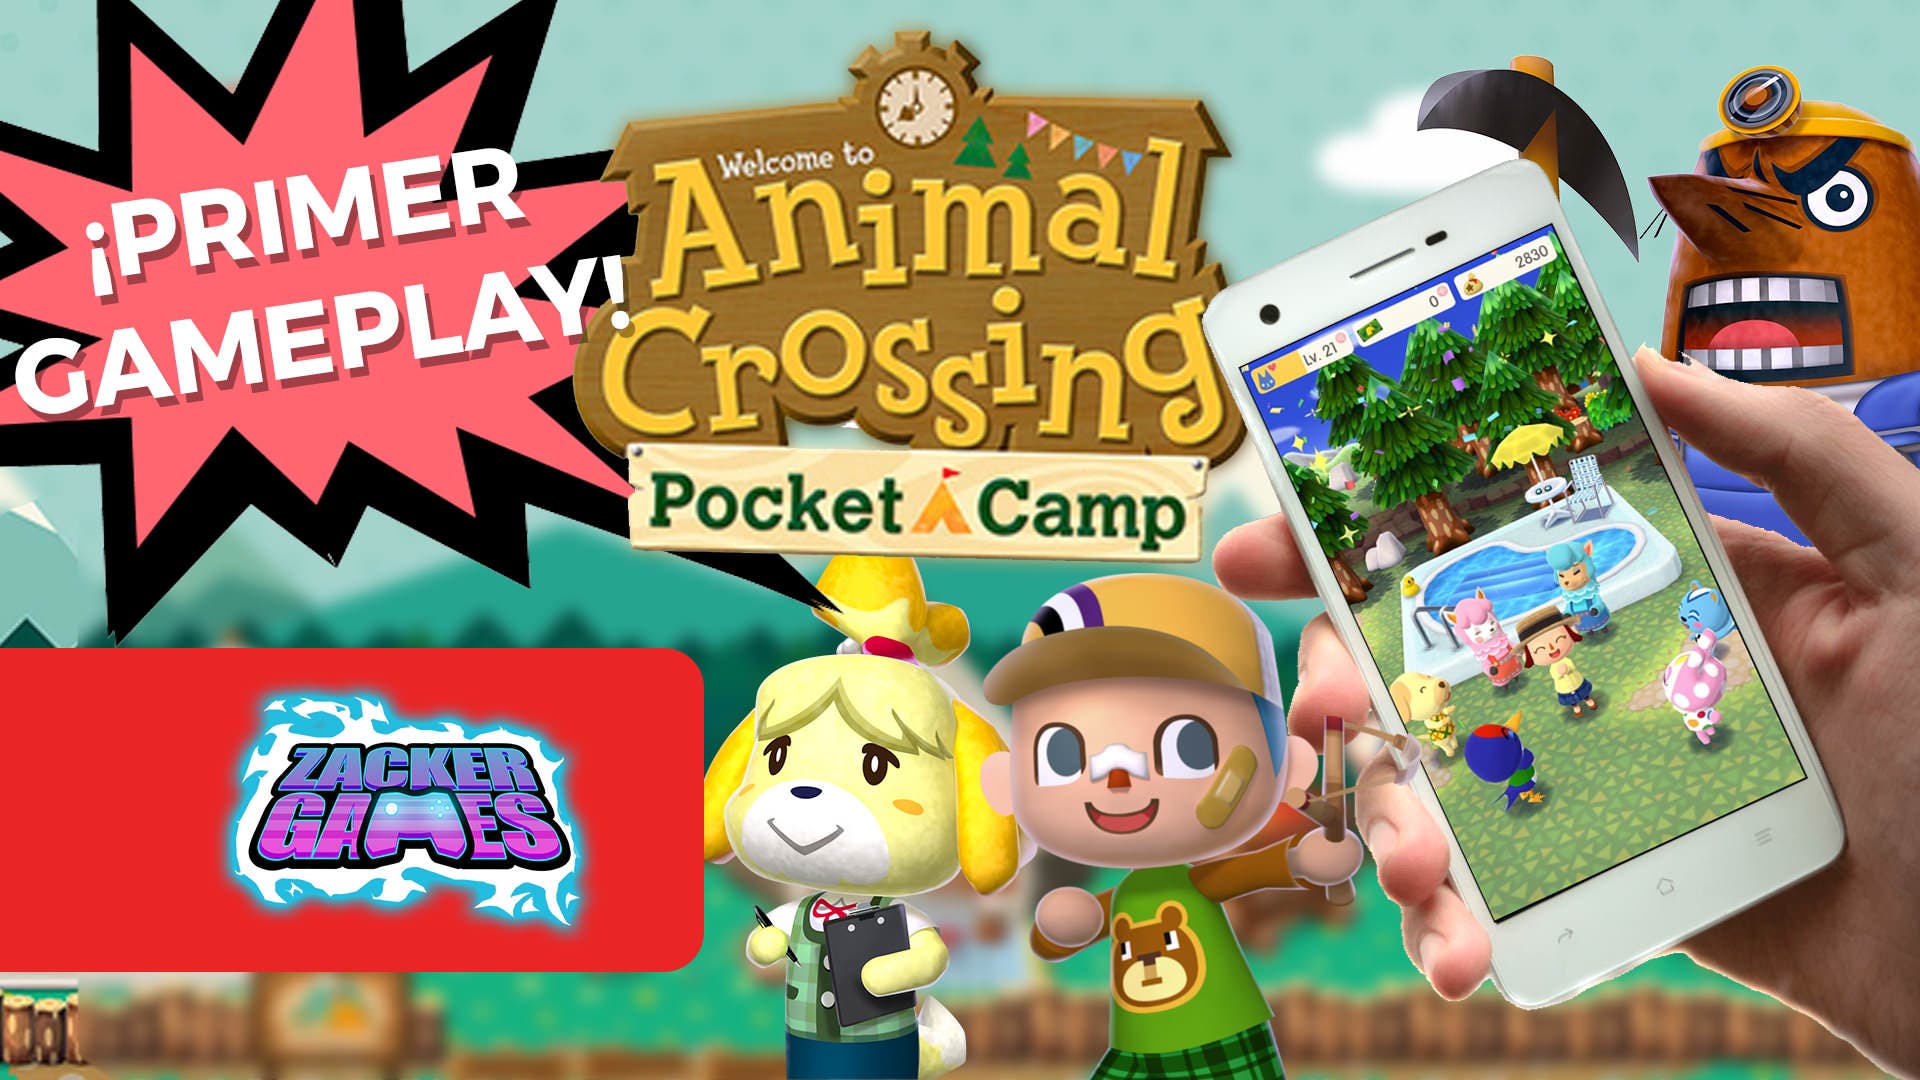 [Vídeo] Primer gameplay e impresiones de Animal Crossing: Pocket Camp para móviles